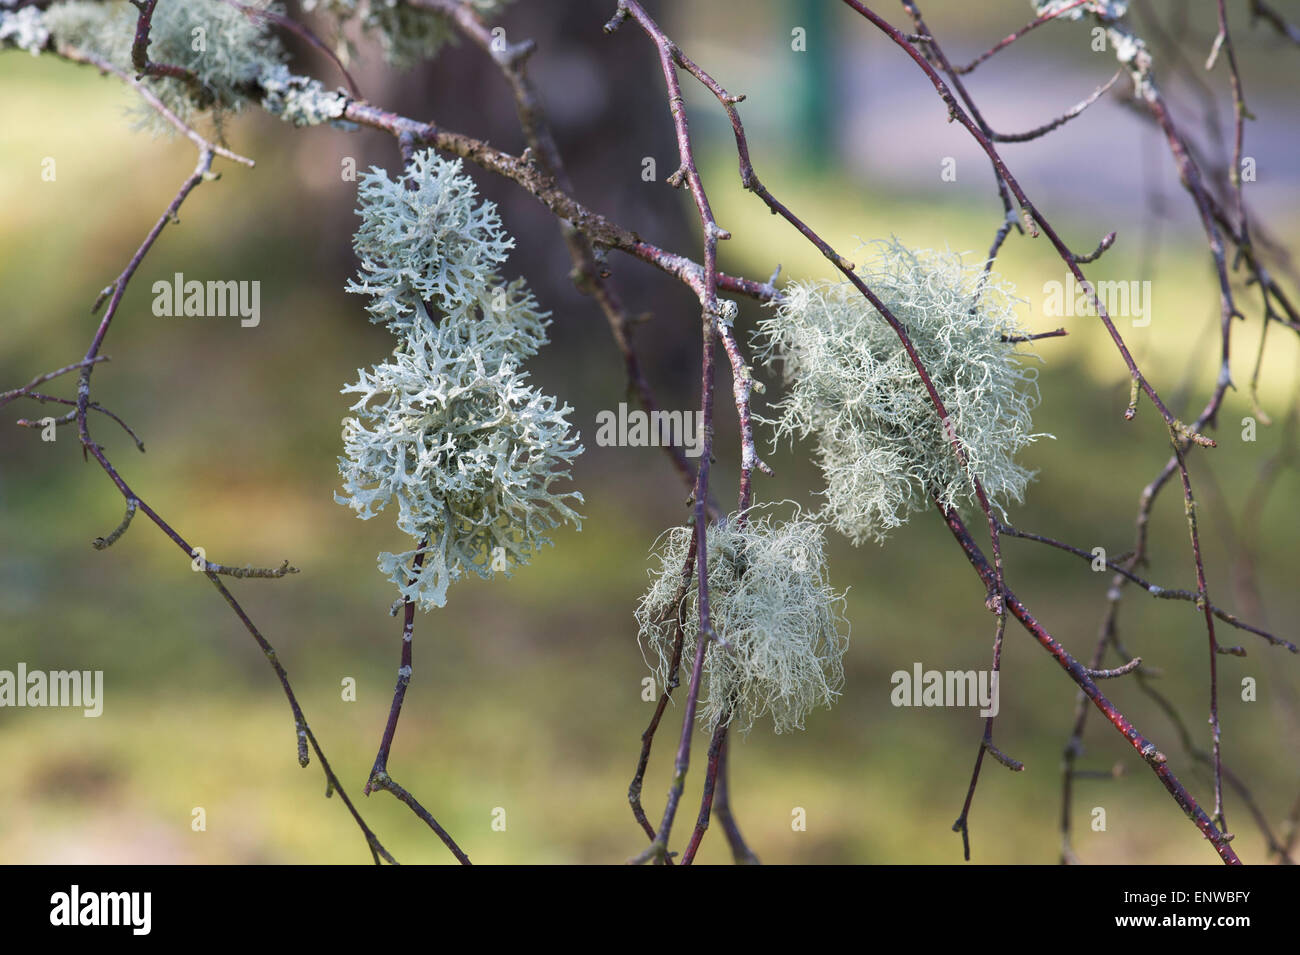 Lichen on a silver birch tree in Scotland. Non parasitic plant like organism Stock Photo